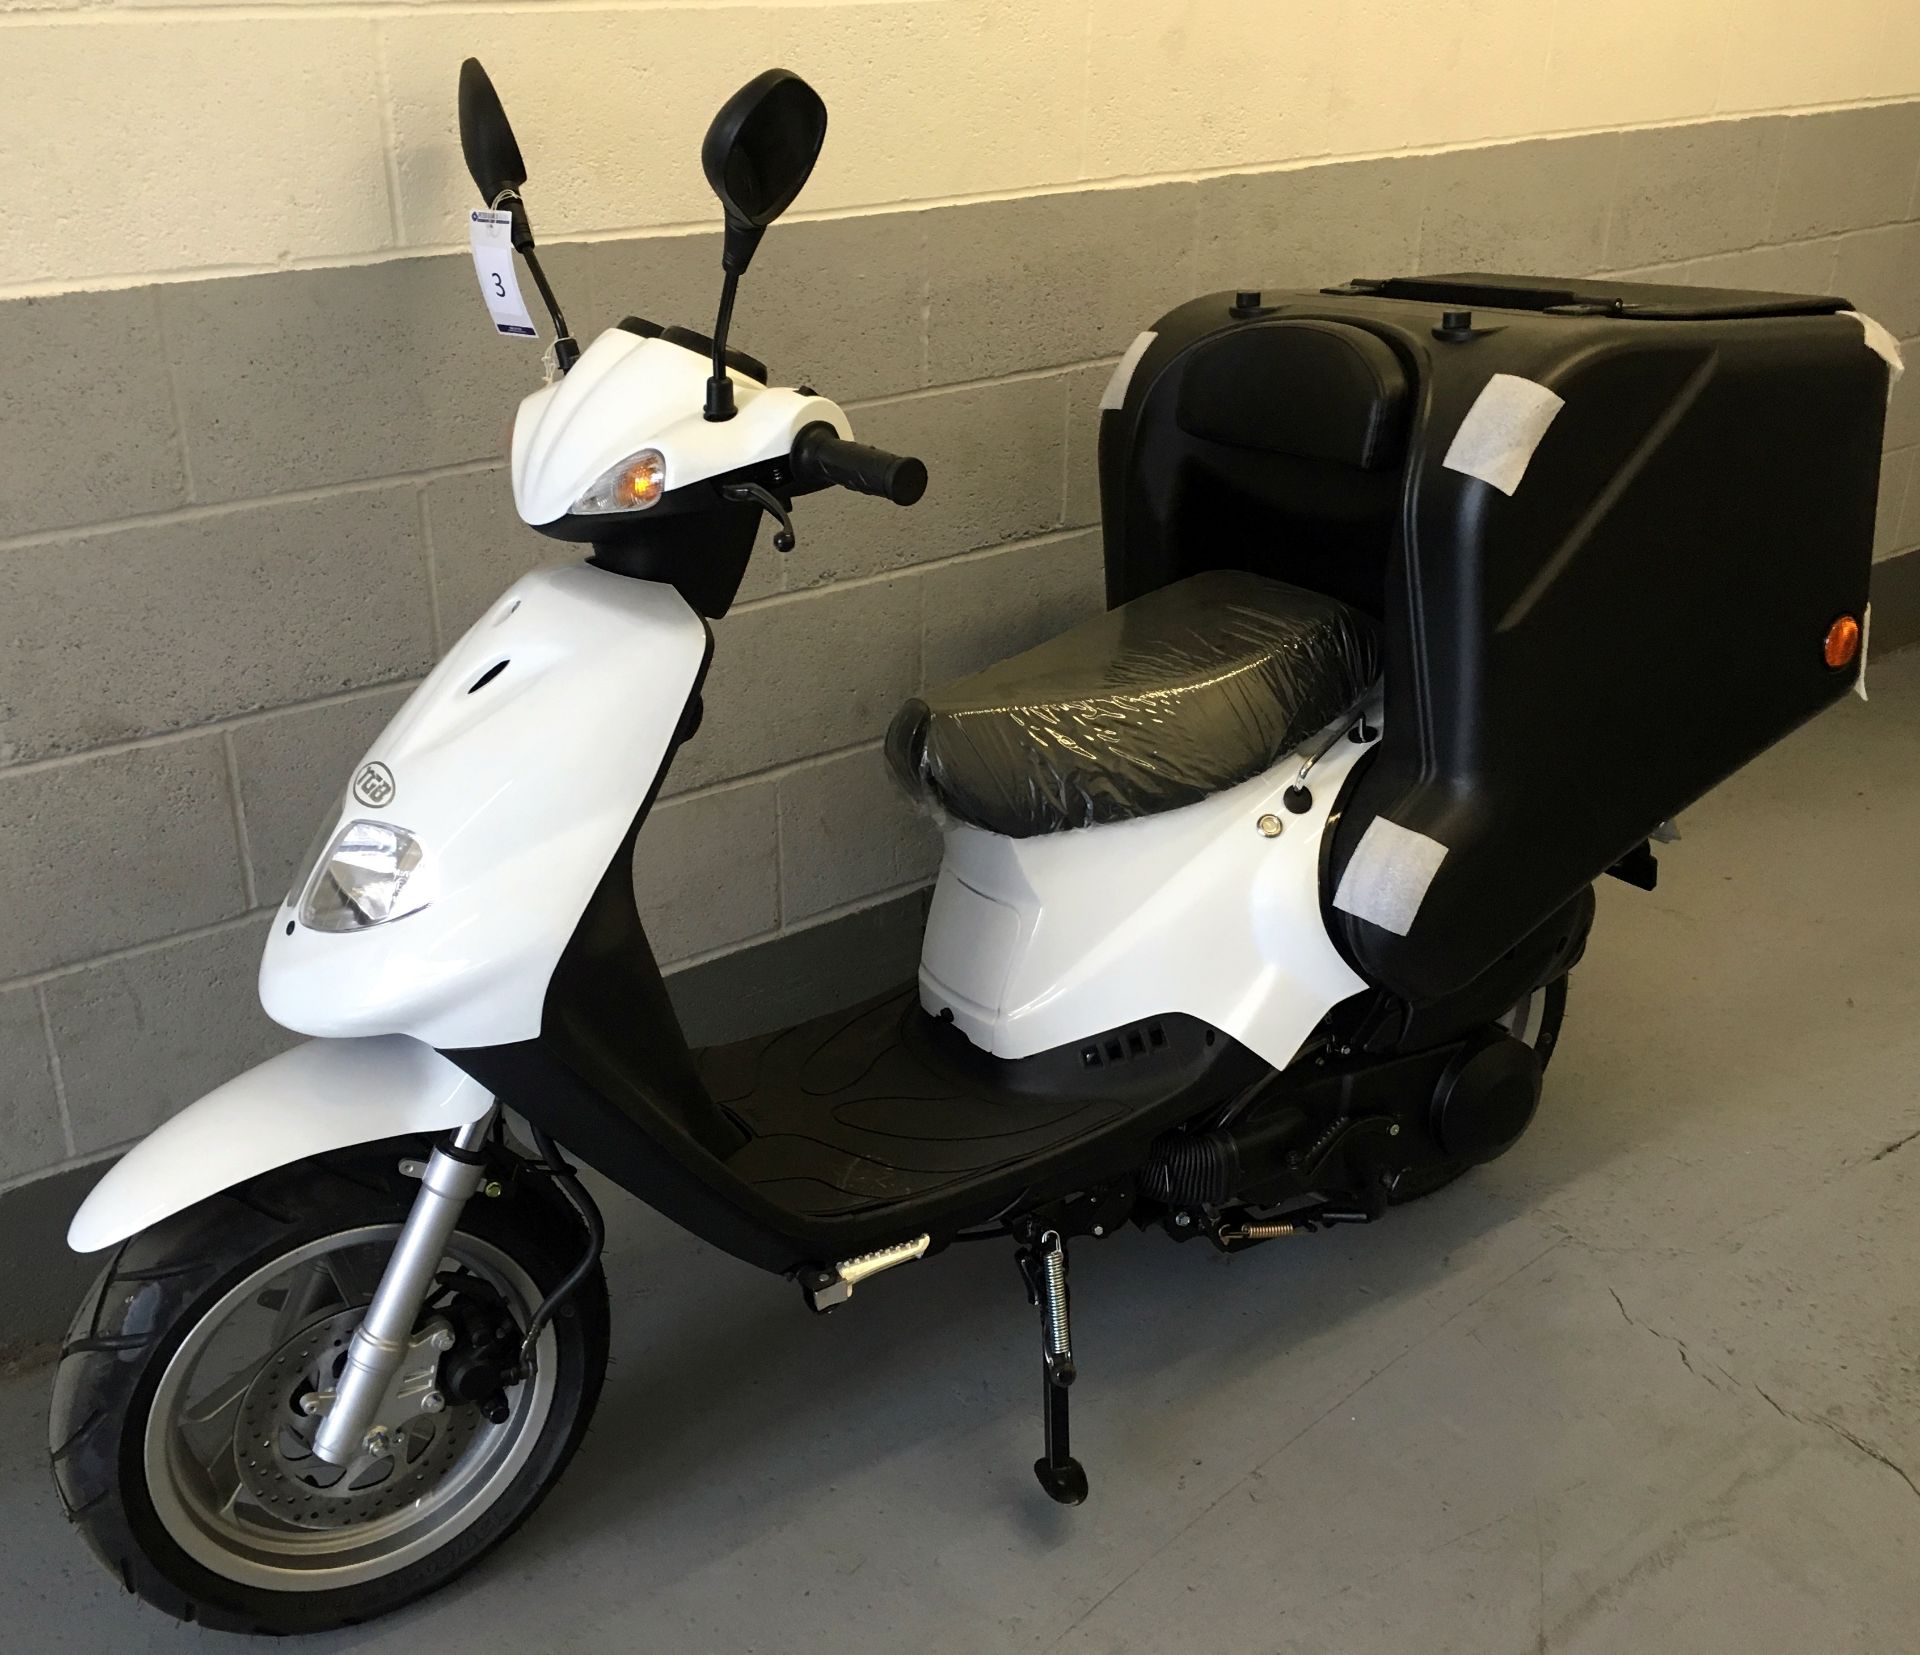 2016 TGB Delivery 125cc Scooter, Registration KE65 CVT, Odometer Reading 9 Miles, First Registered